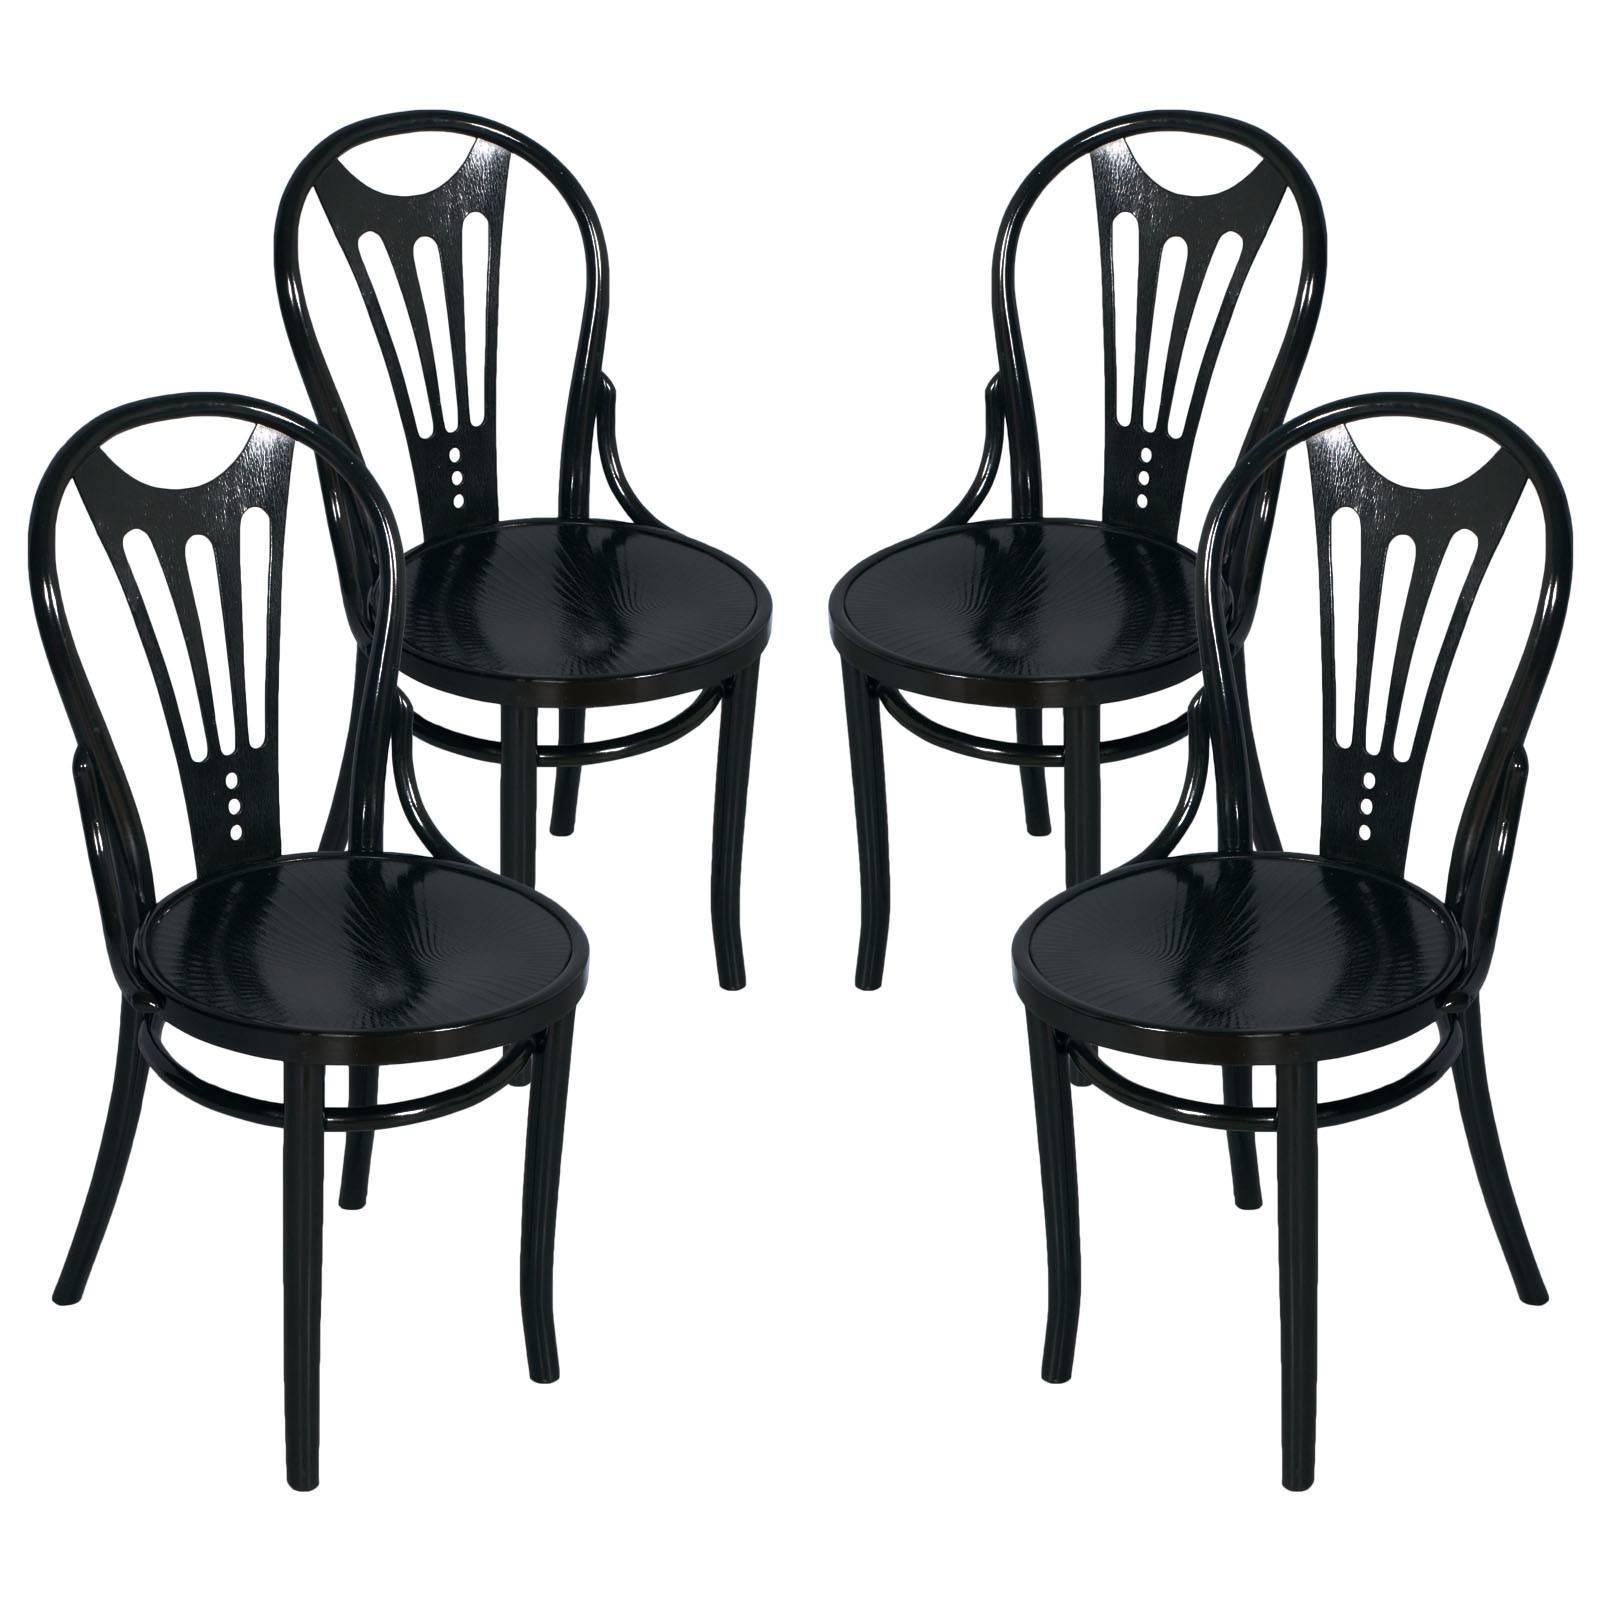 1910s Four Black Ebonized Thonet Chairs Art Nouveau Belle Epoque